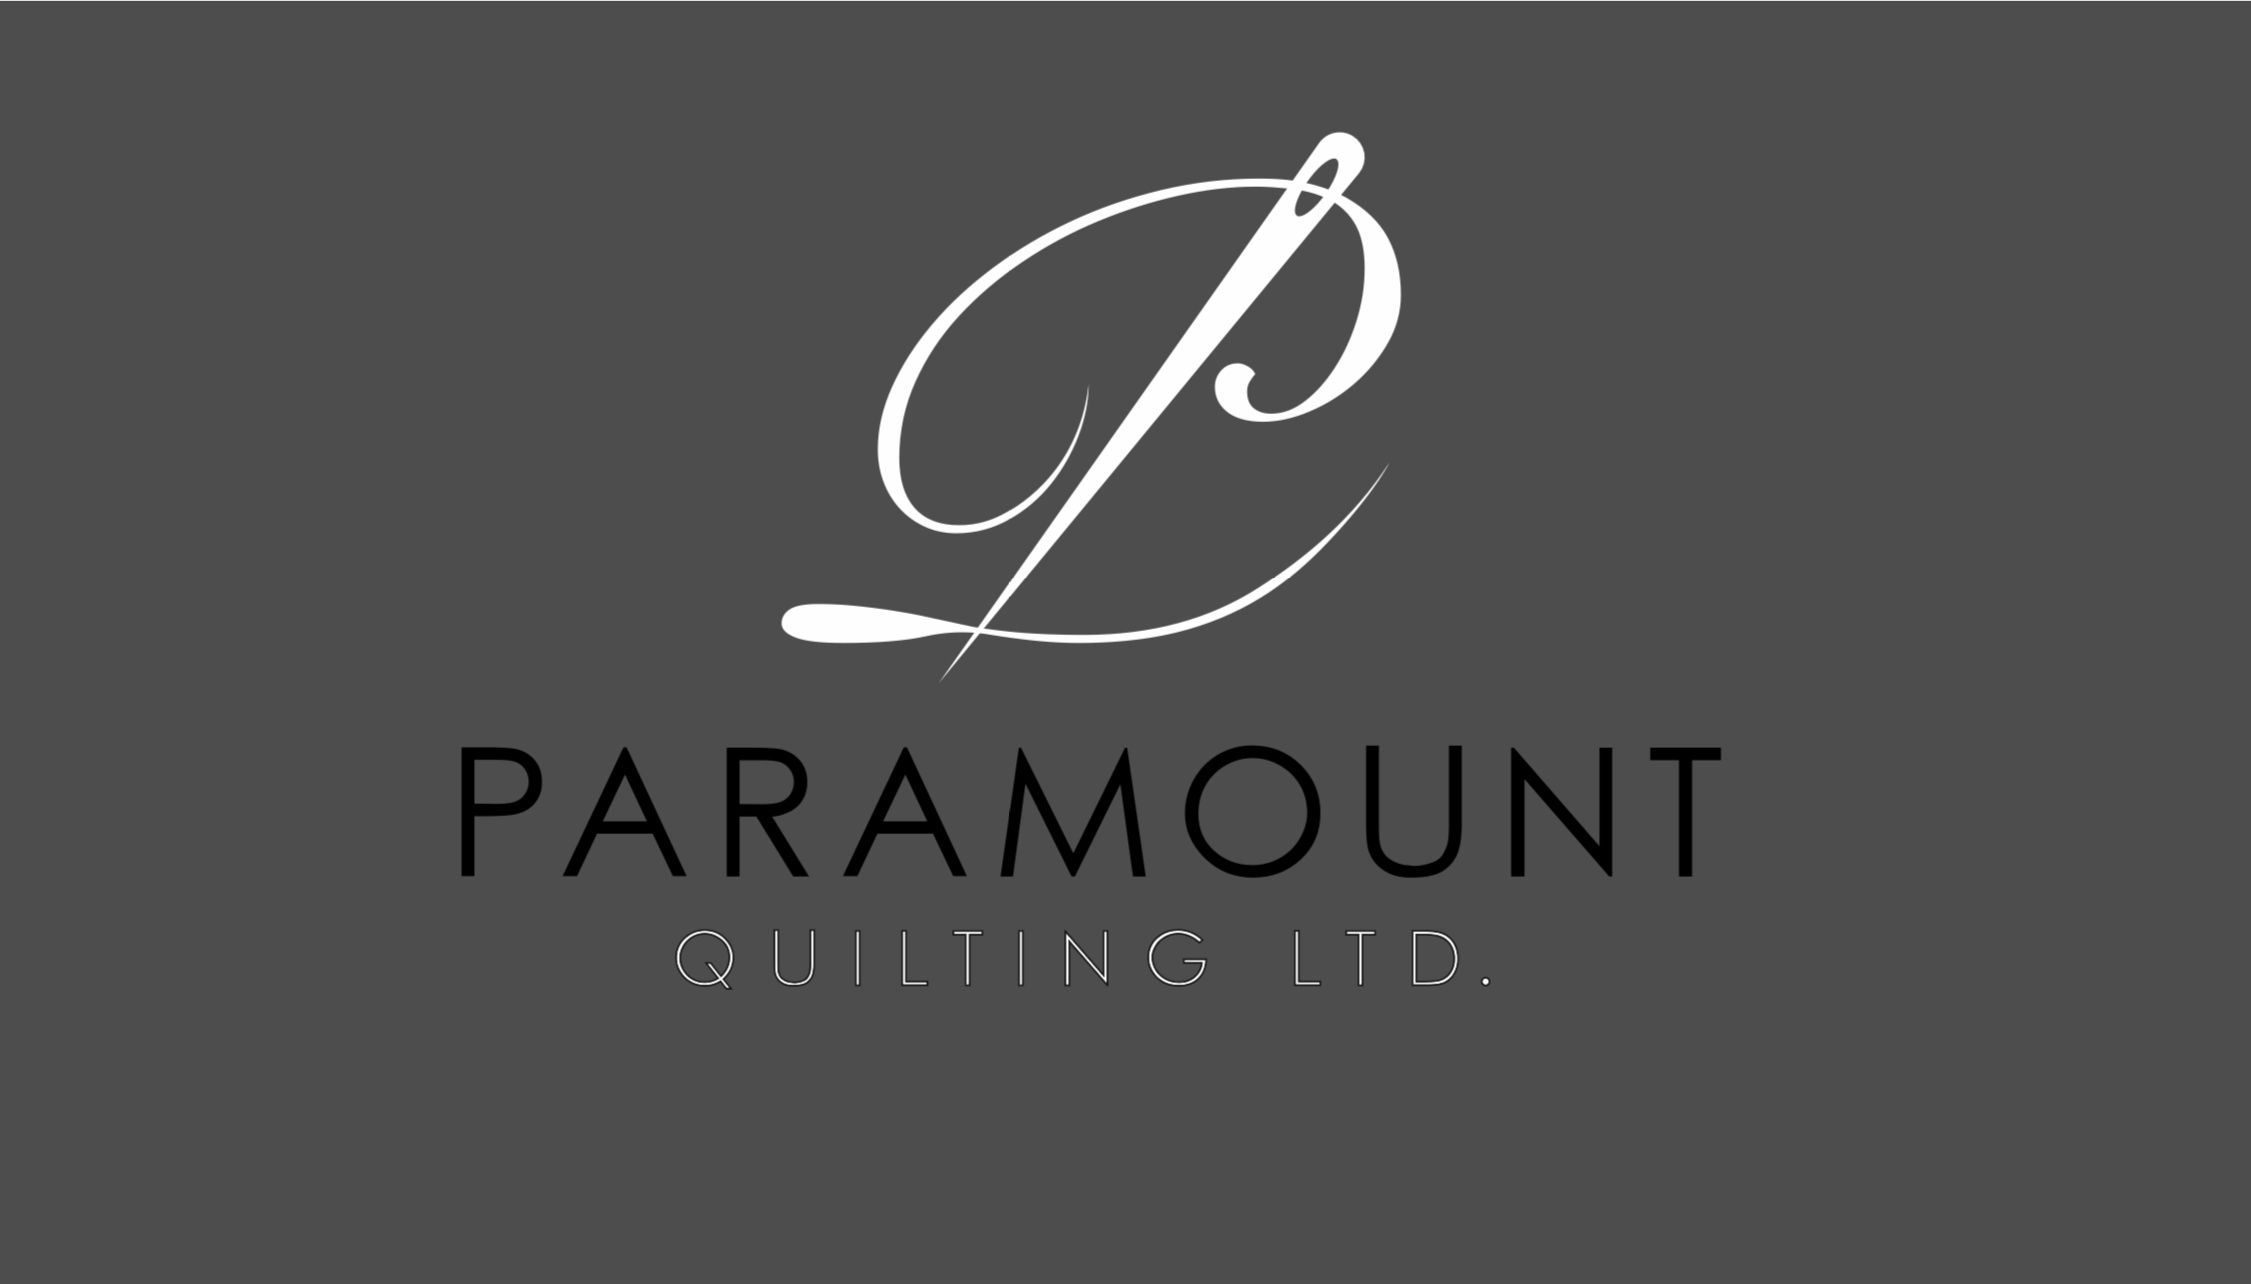 Paramount Quilting